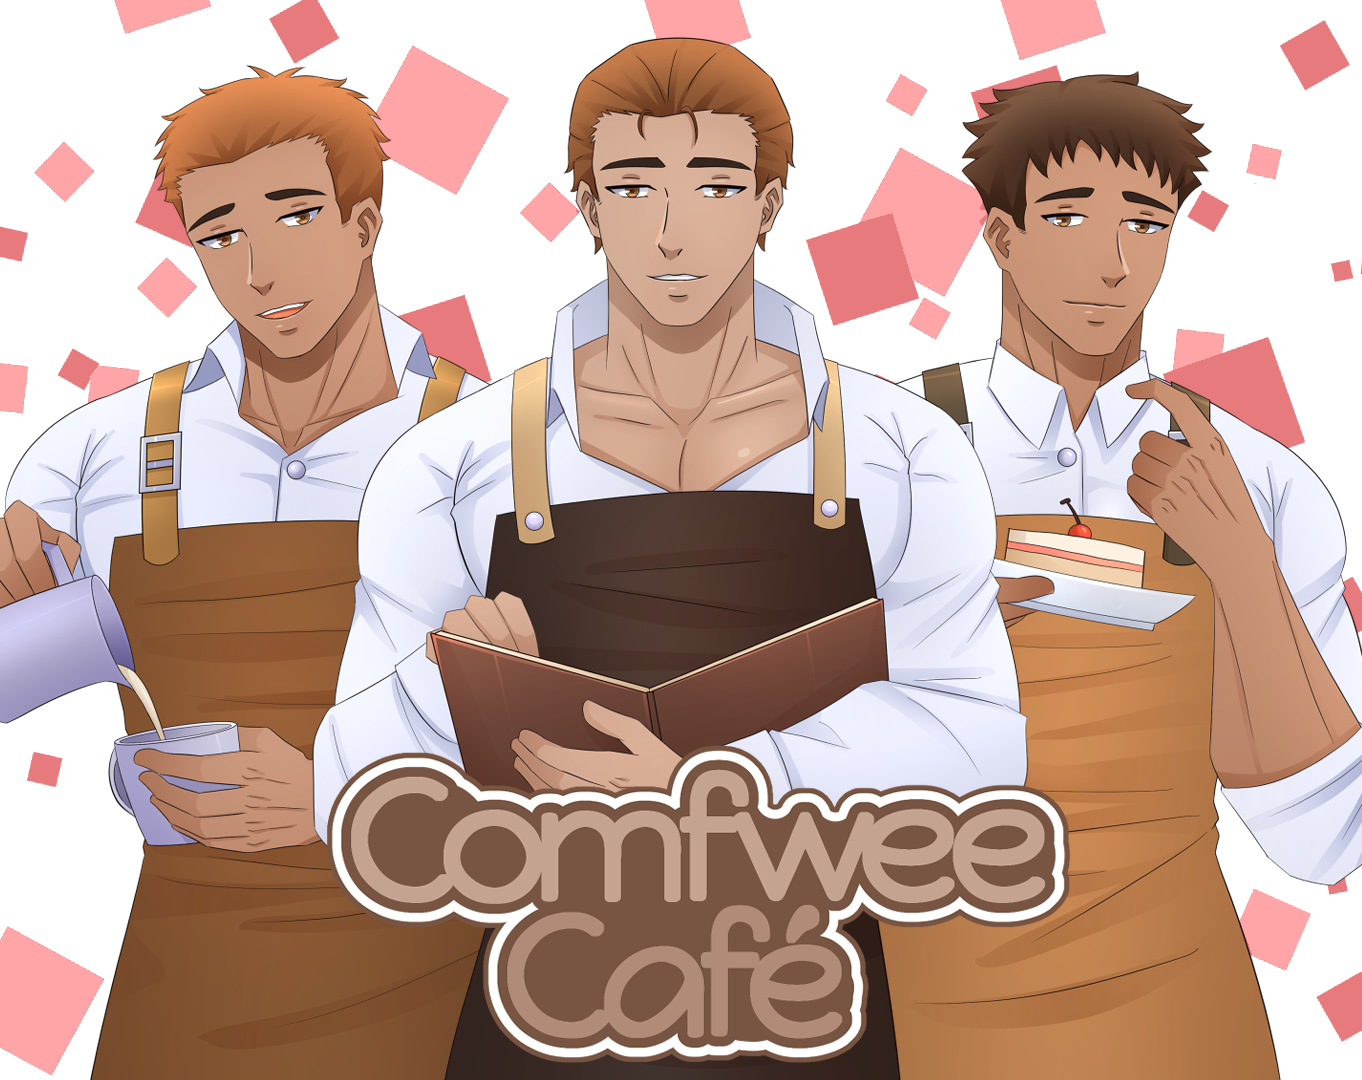 Comfwee Café